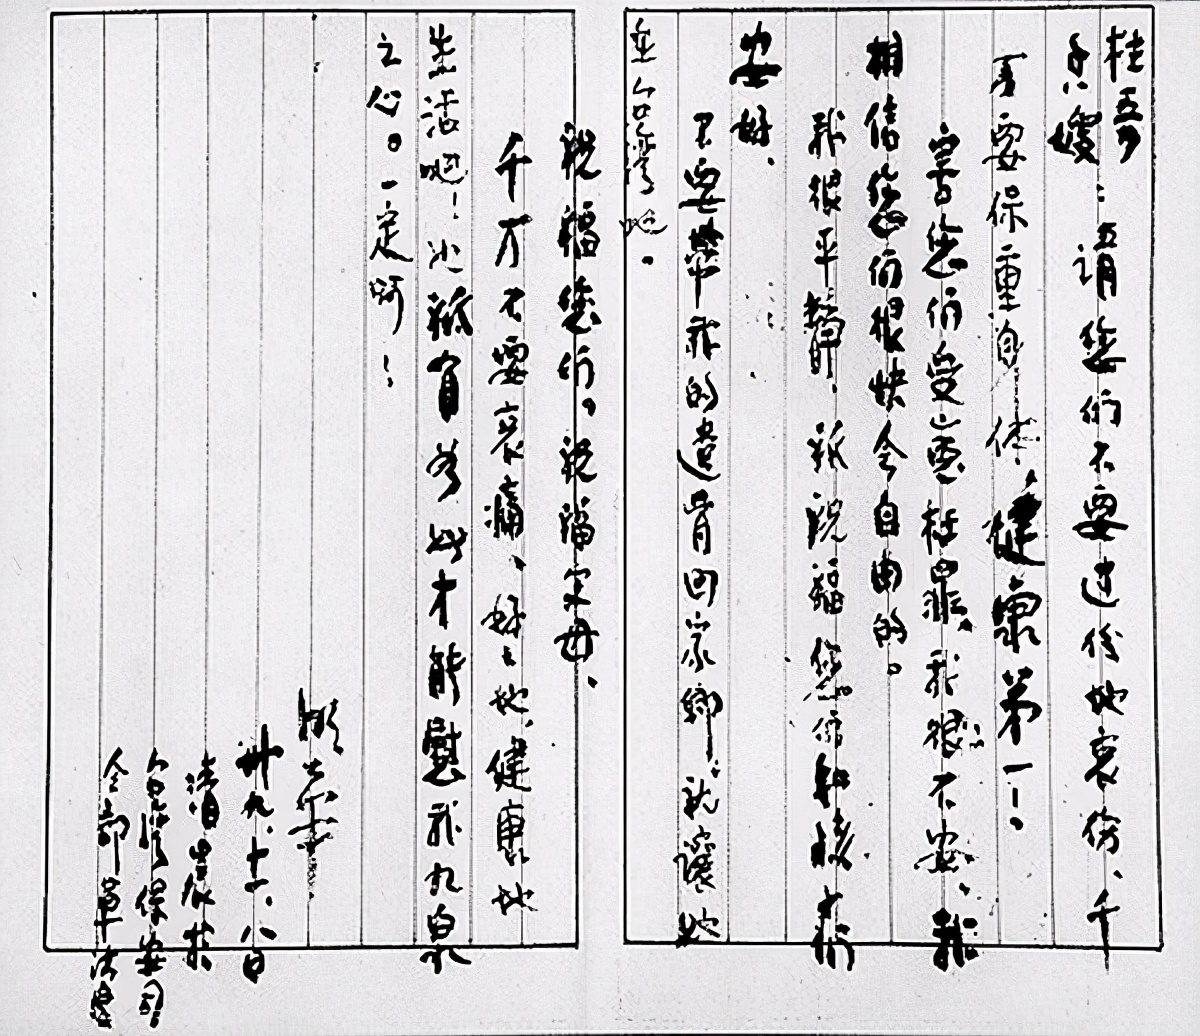 1982年，台湾一老人带着骨灰来北京，惊动中央：4天后葬入八宝山